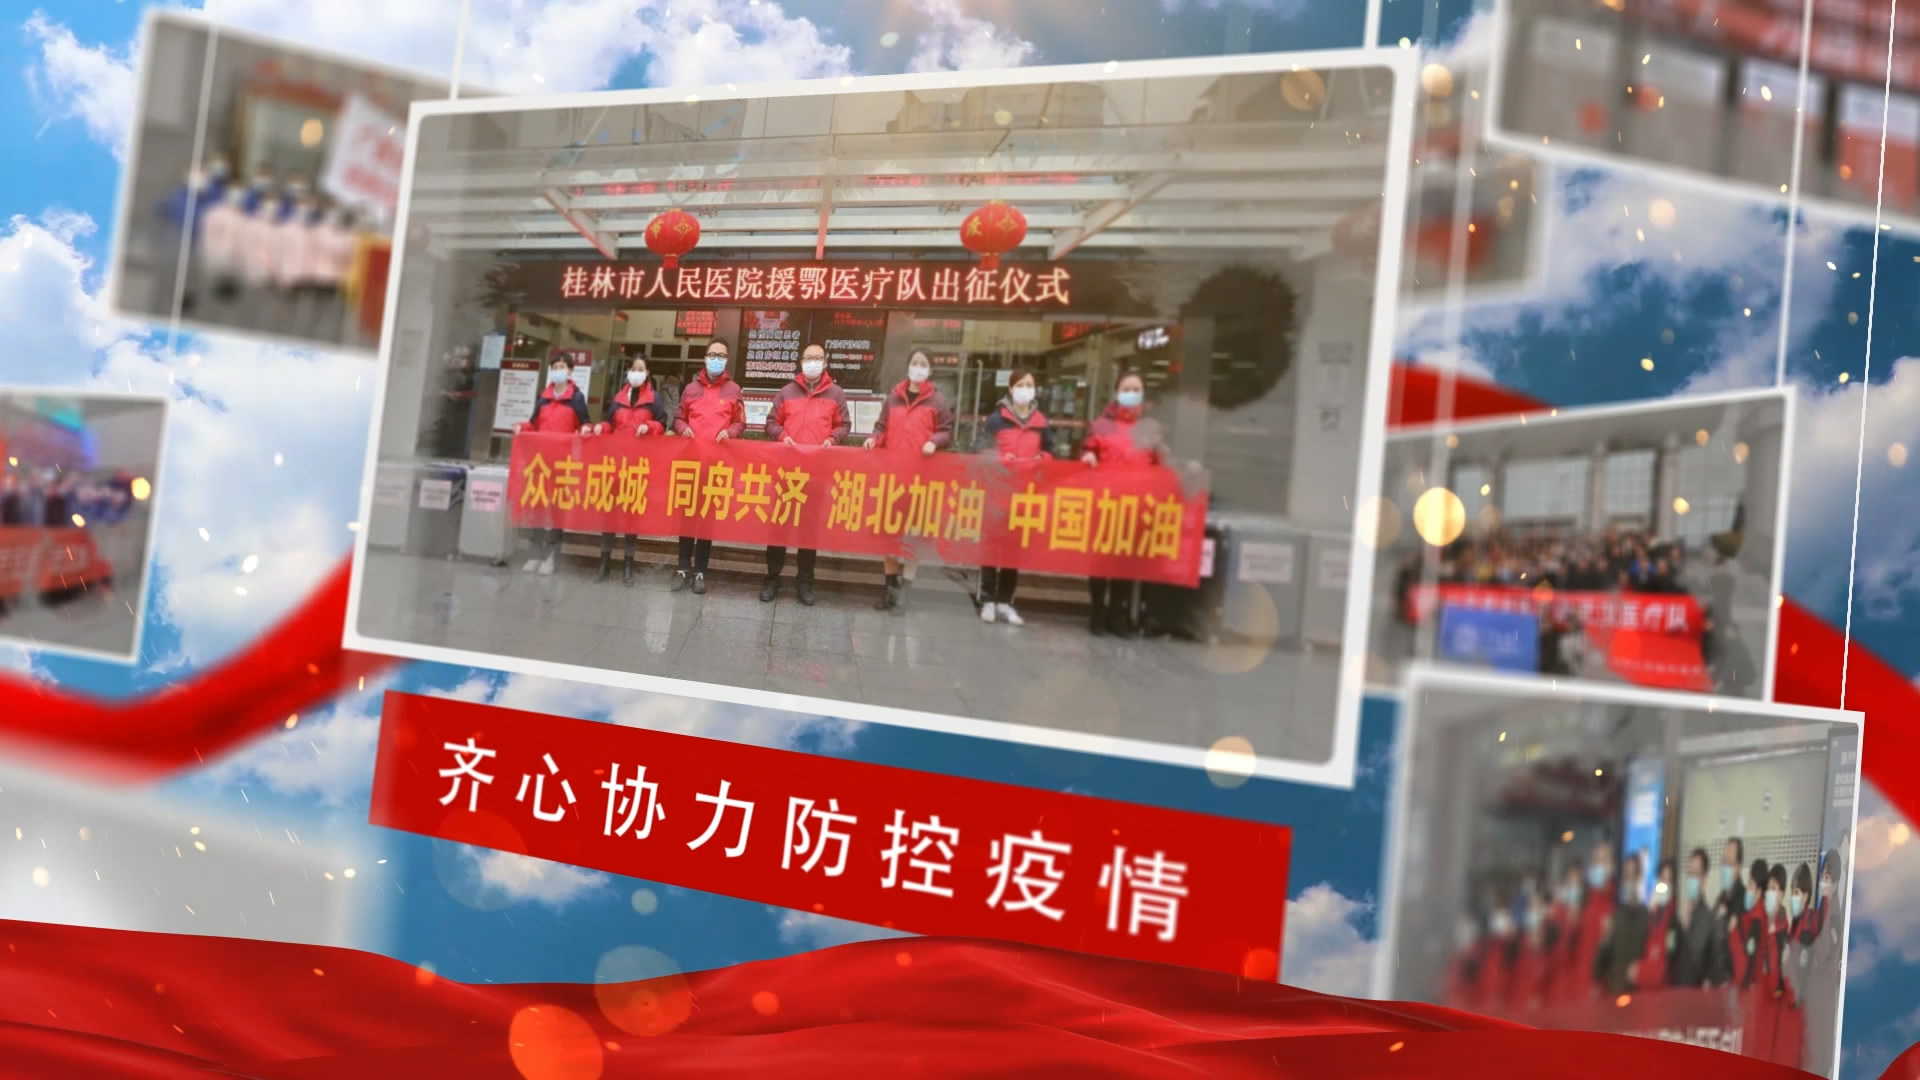 武汉中国加油抗击病毒向医护人员致敬 抗击疫情